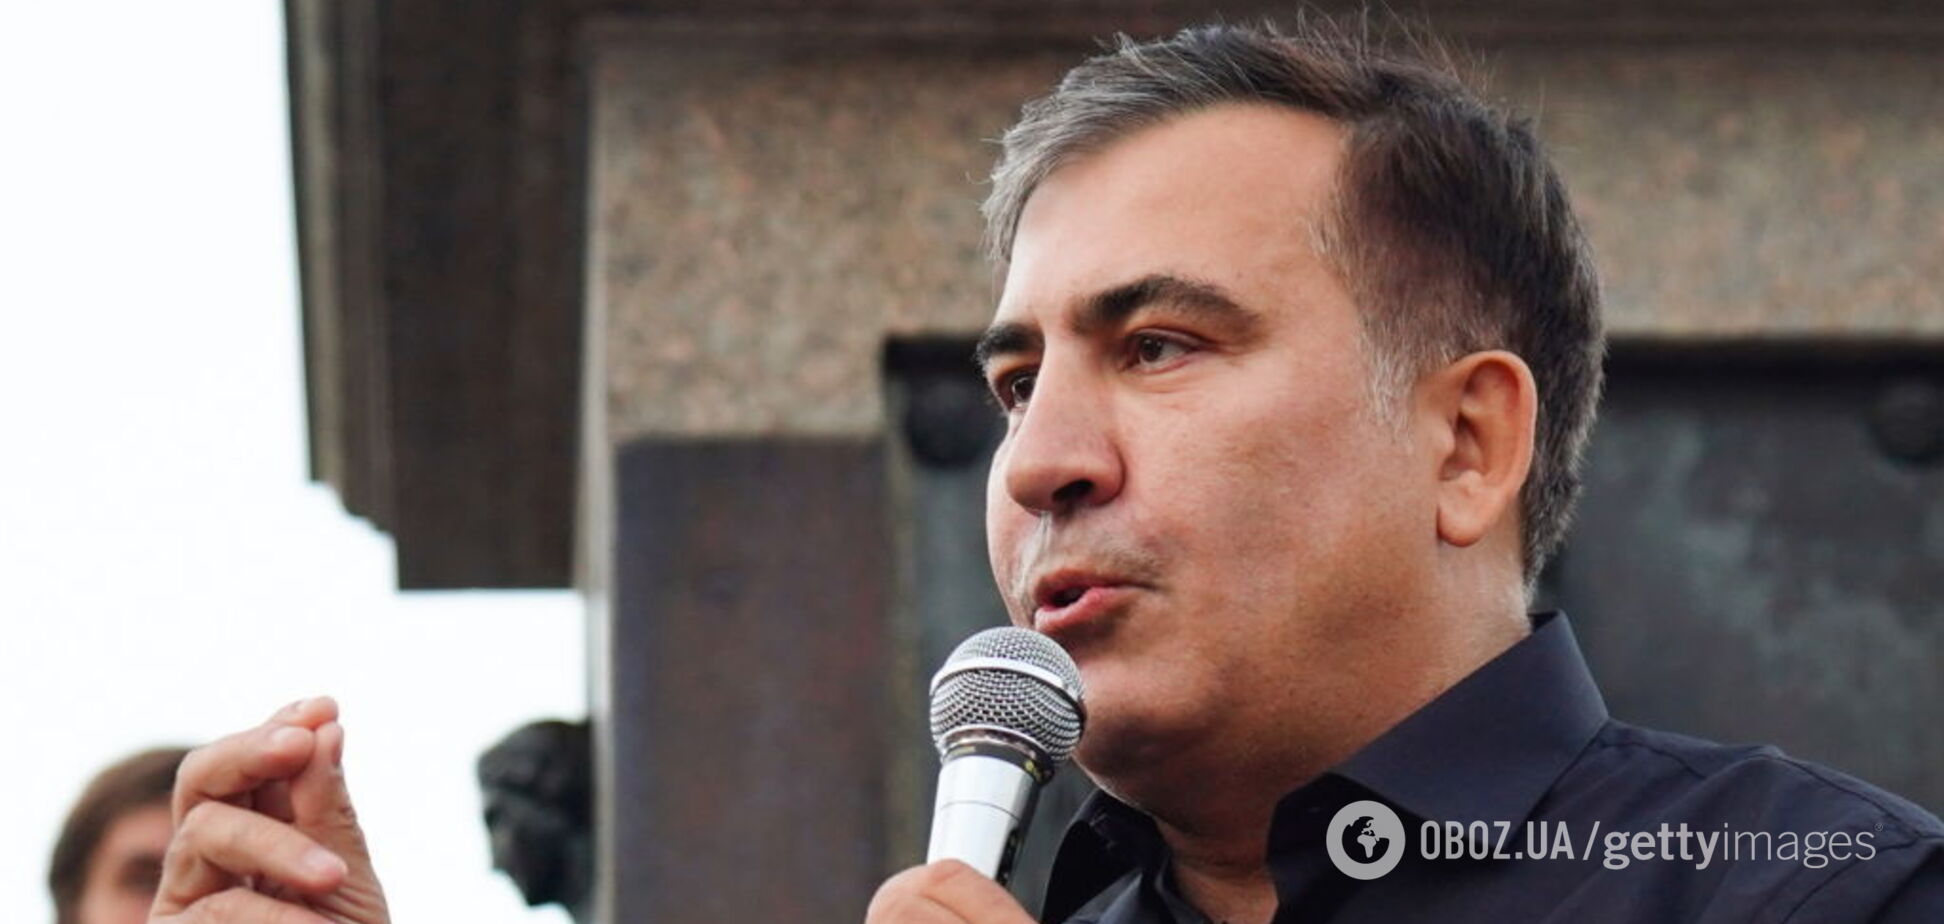 Саакашвили решил внезапно покинуть Украину: что известно